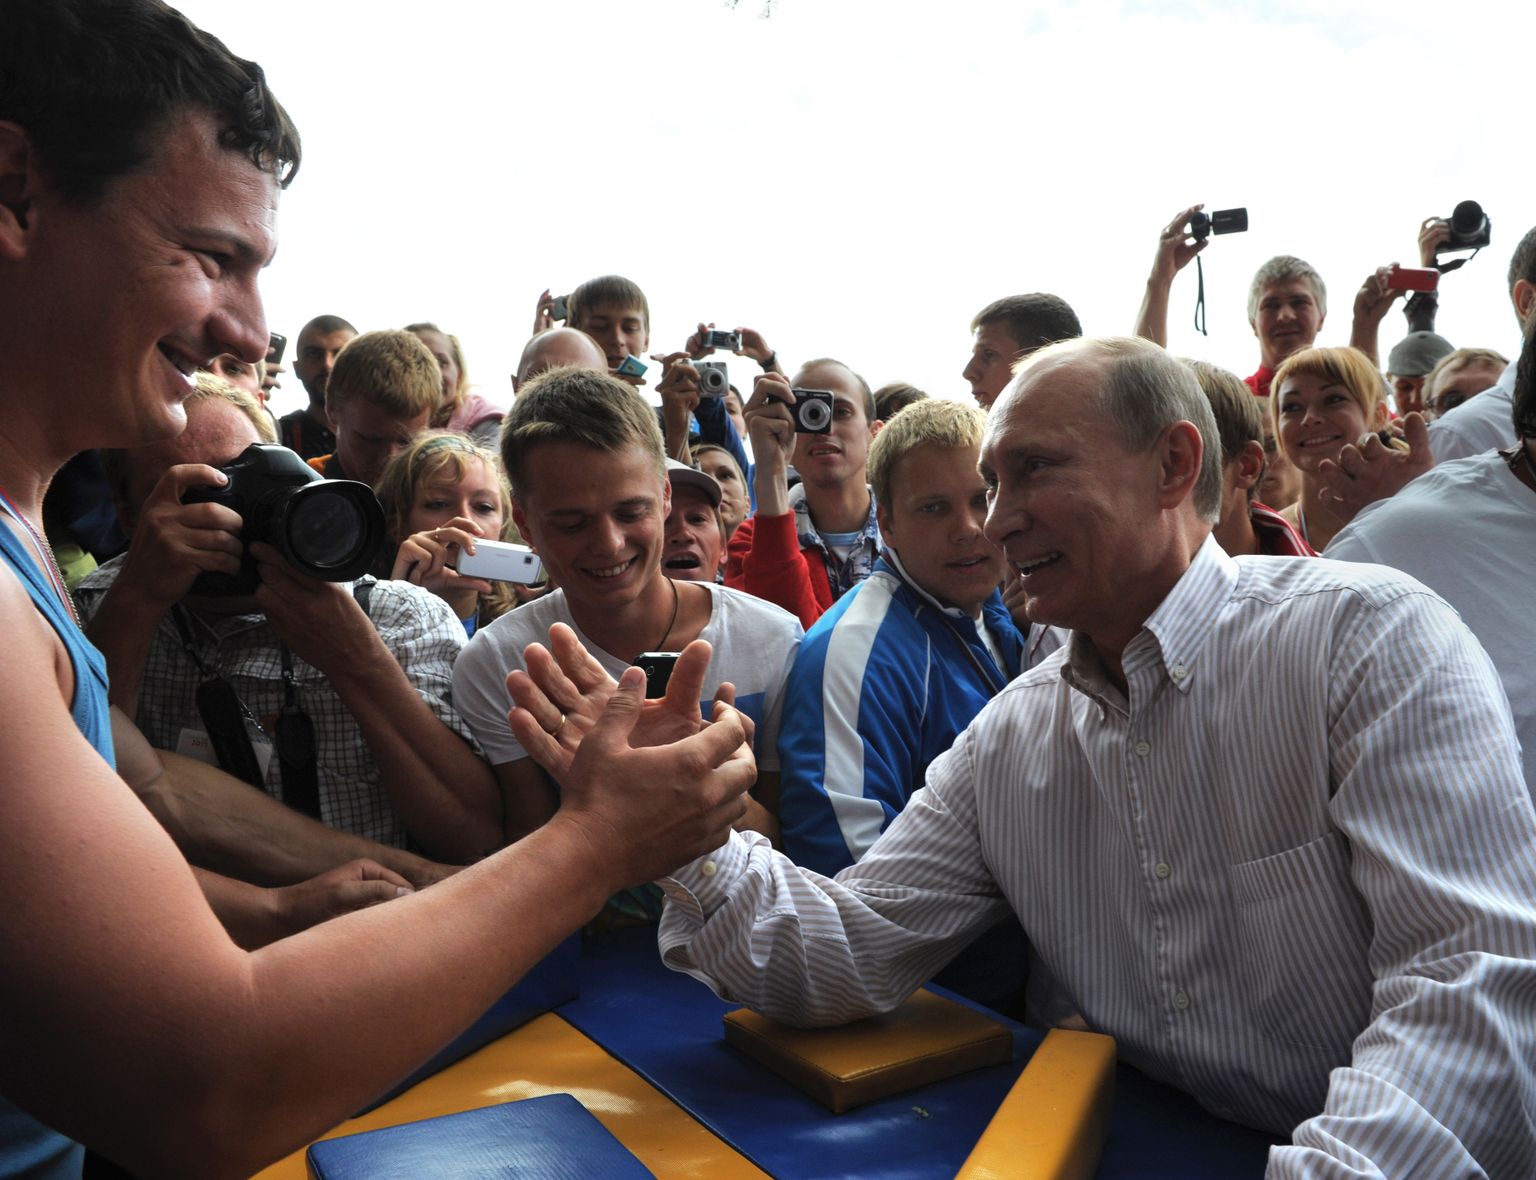 Venemaa peaminister Vladimir Putin (paremal) surumas 1. augustil 2011 kätt Kremlit toetanud noorteliikumise Naši liikmega Seligeris noortelaagris. Seliger on Moskvast 400 kilomeetri kaugusel. Naši on nüüdseks tegevuse lõpetanud